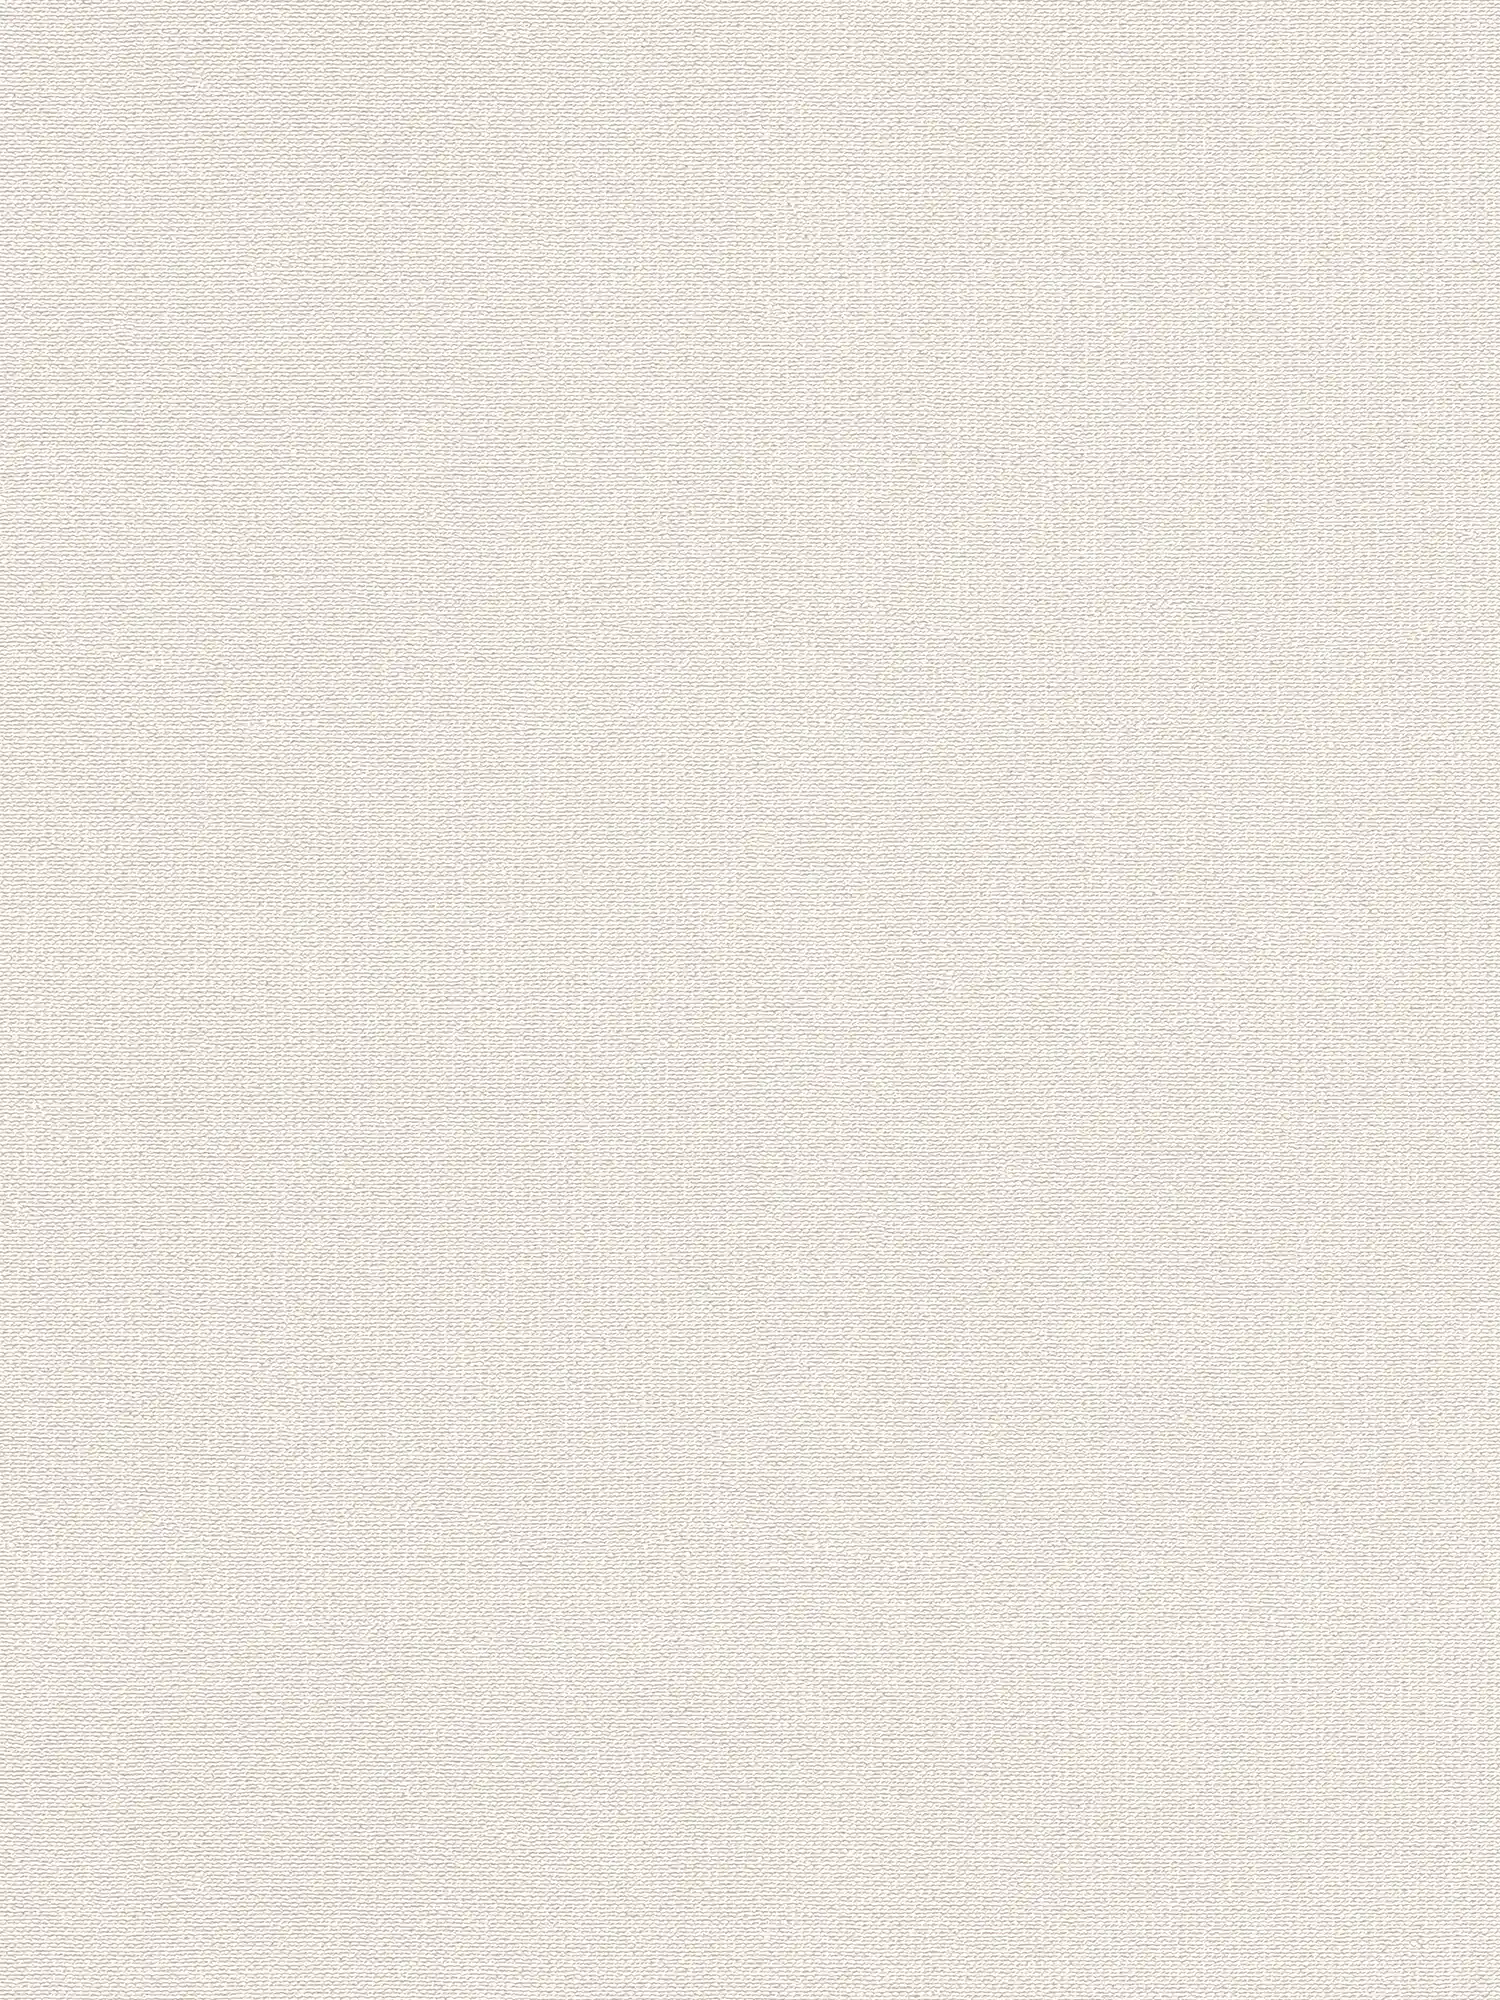 Matte Vliestapete mit Leinen Optik Struktur – Weiß, Creme
